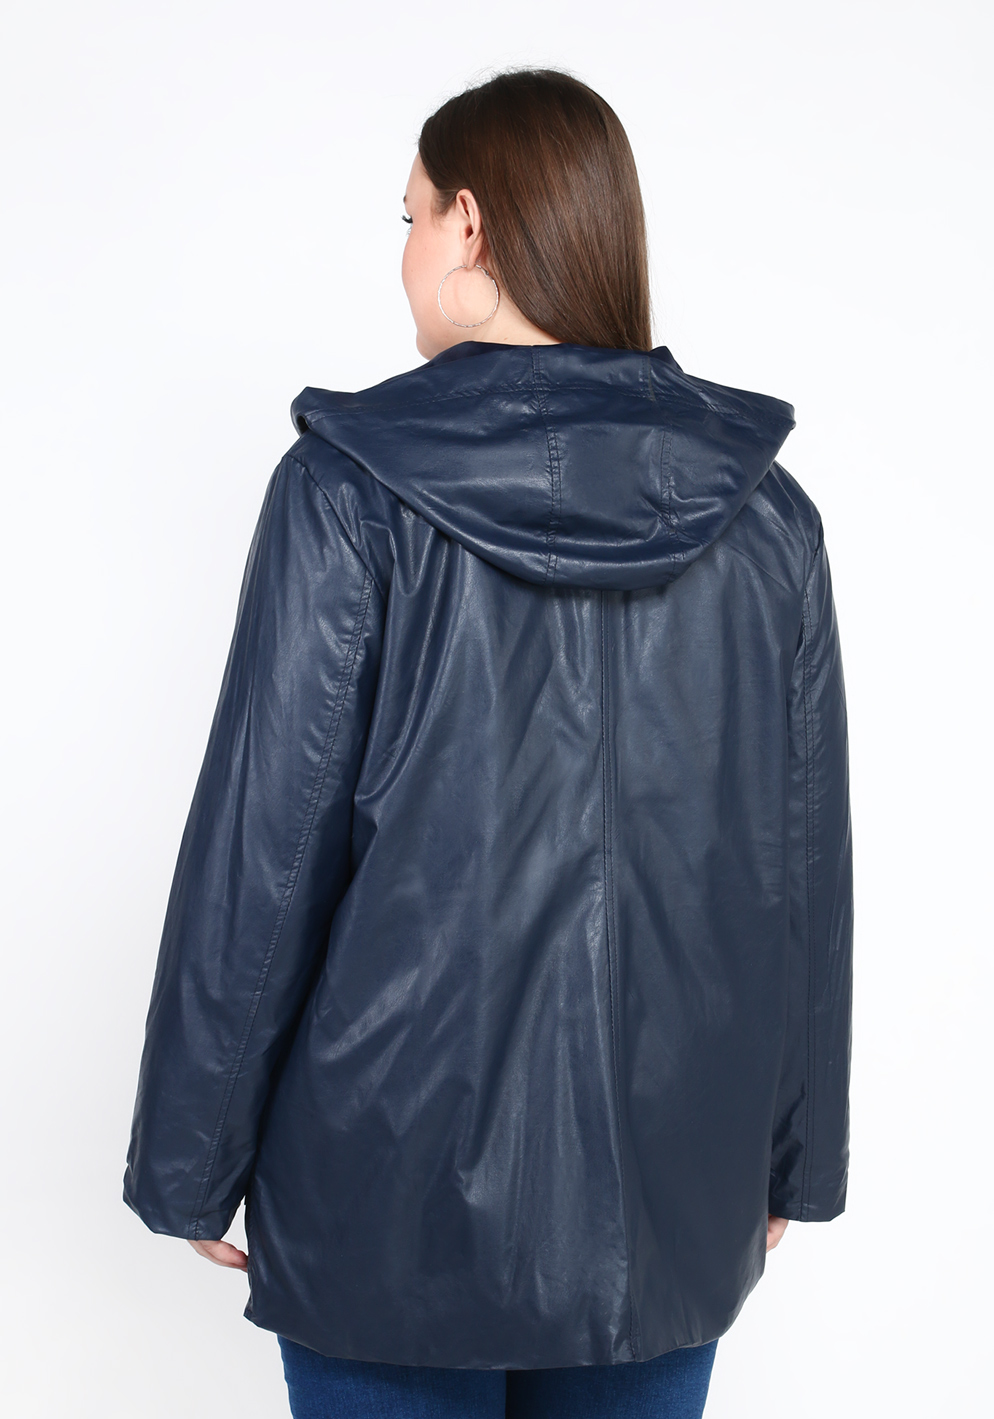 Куртка «Прекрасная история», размер 50, цвет синий свободная модель - фото 4